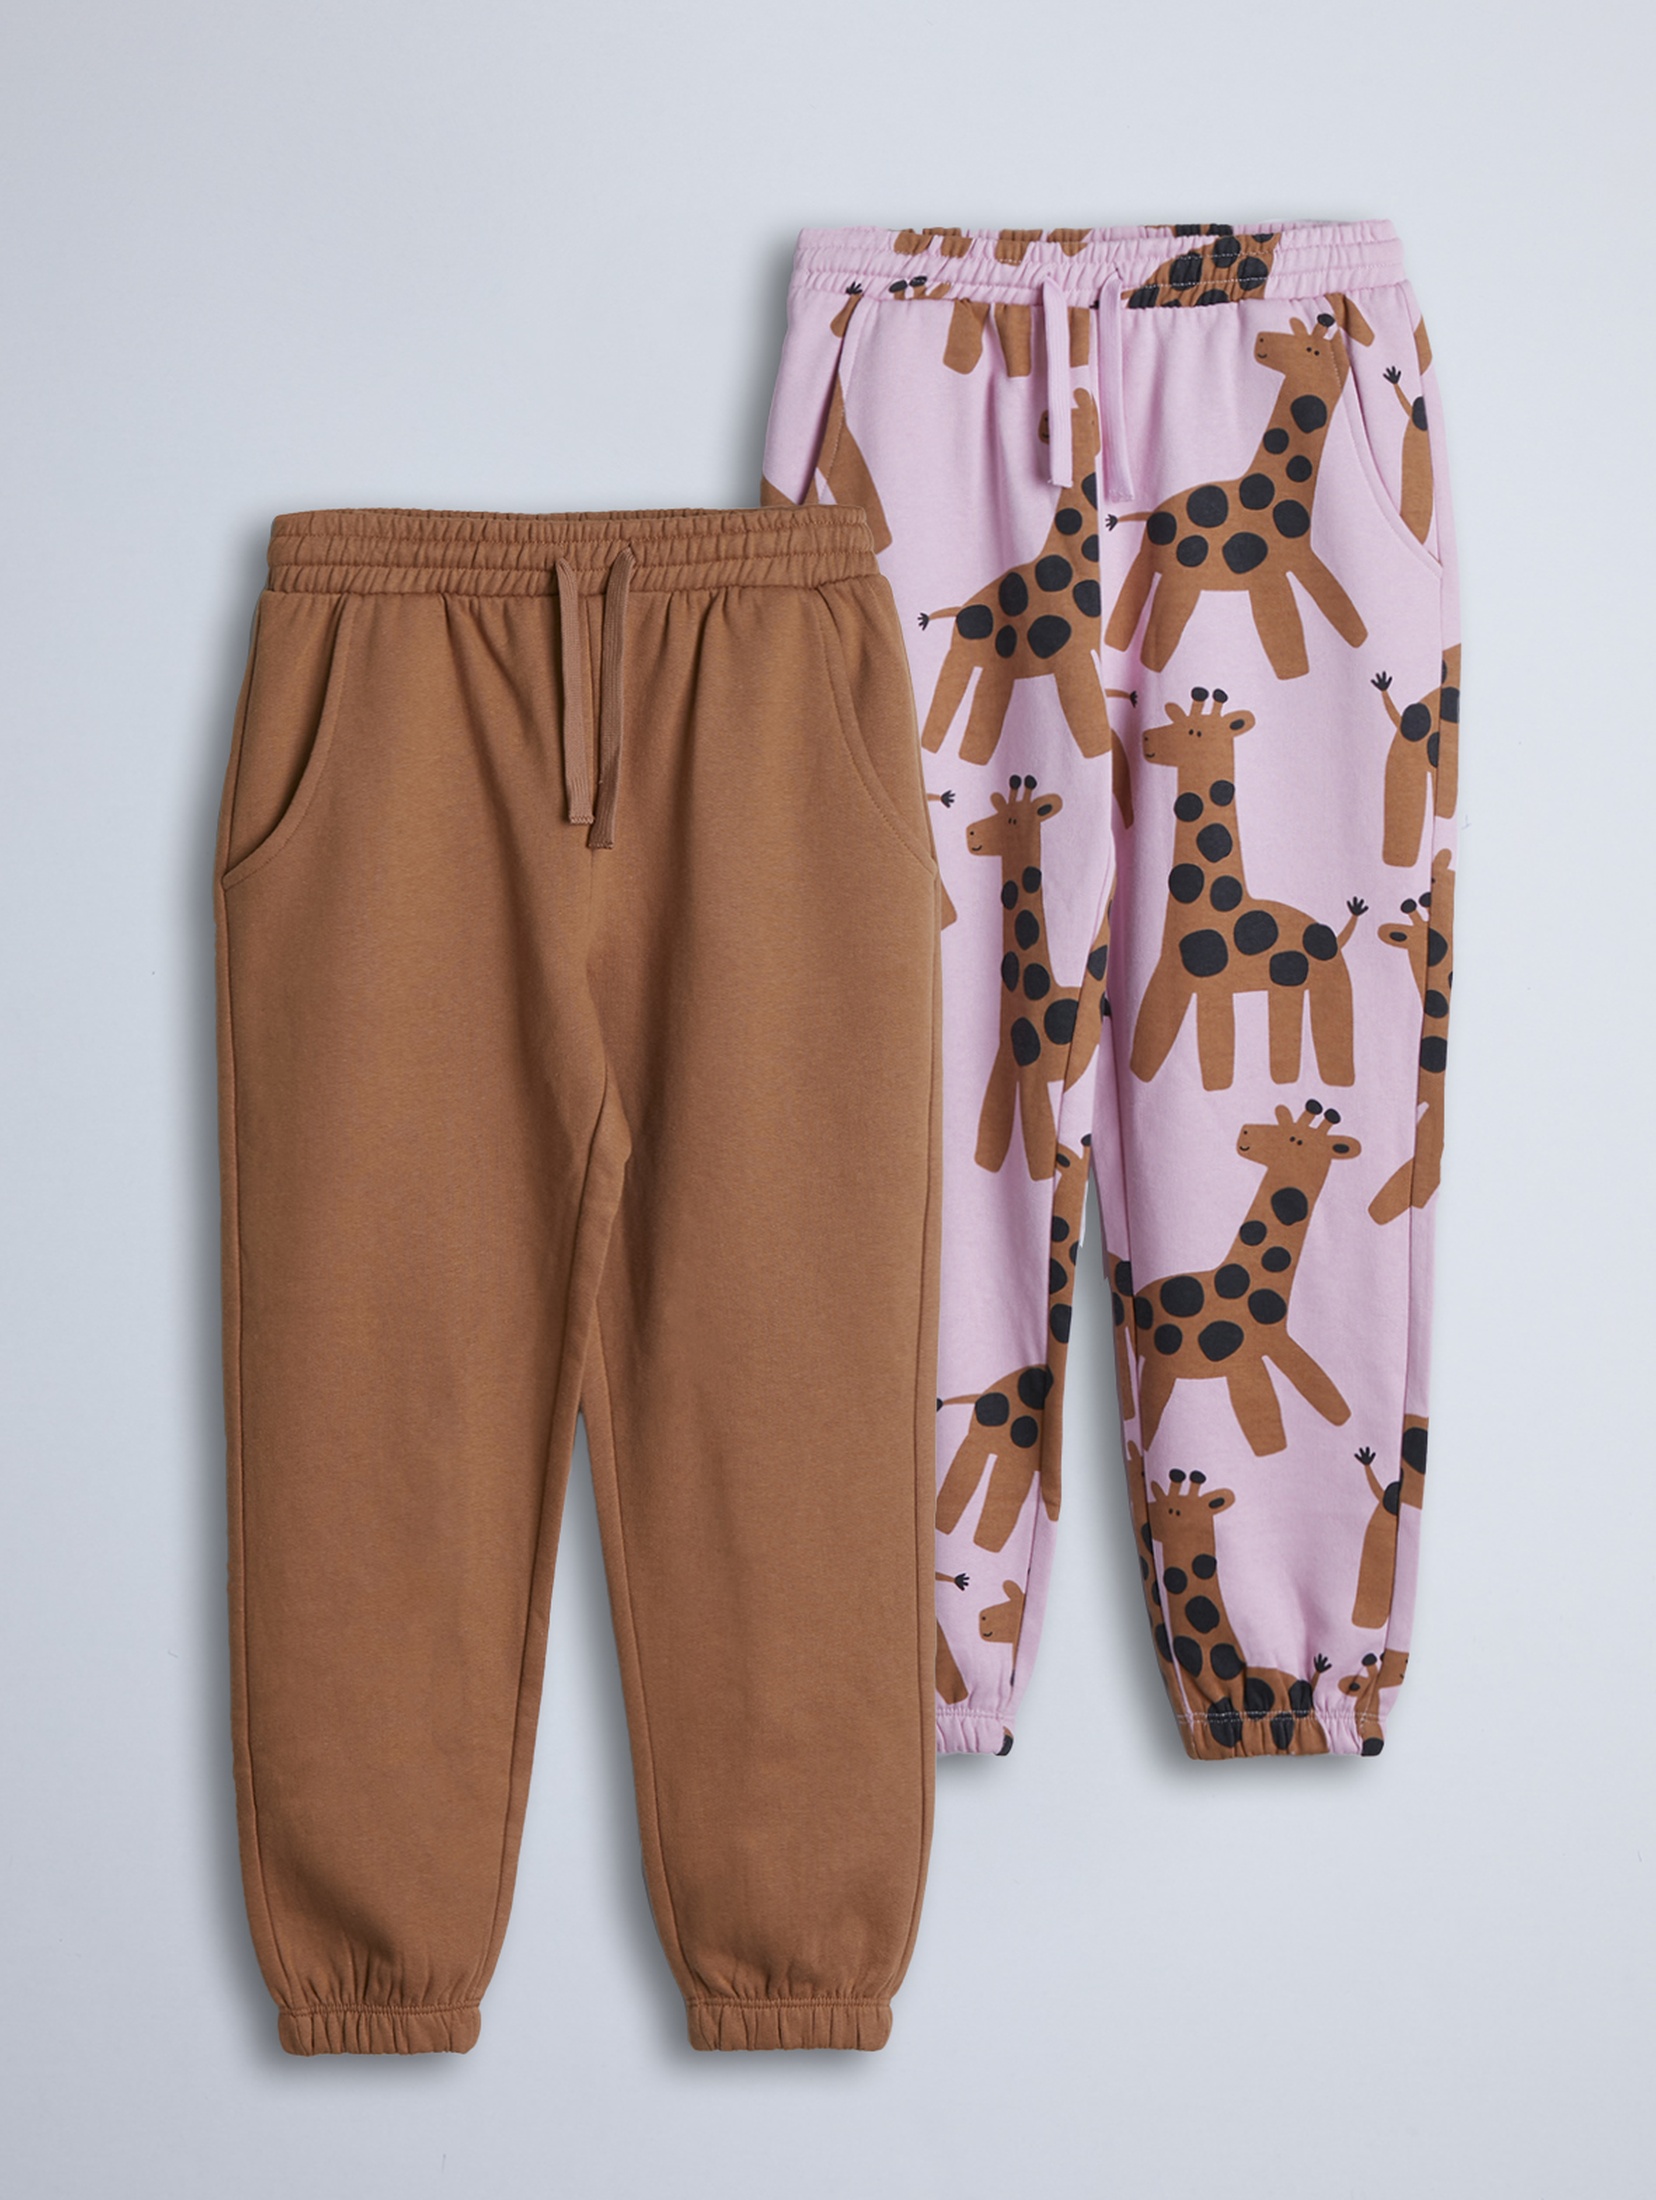 Spodnie dresowe - brązowe i różowe w żyrafy - 2pak - Limited Edition